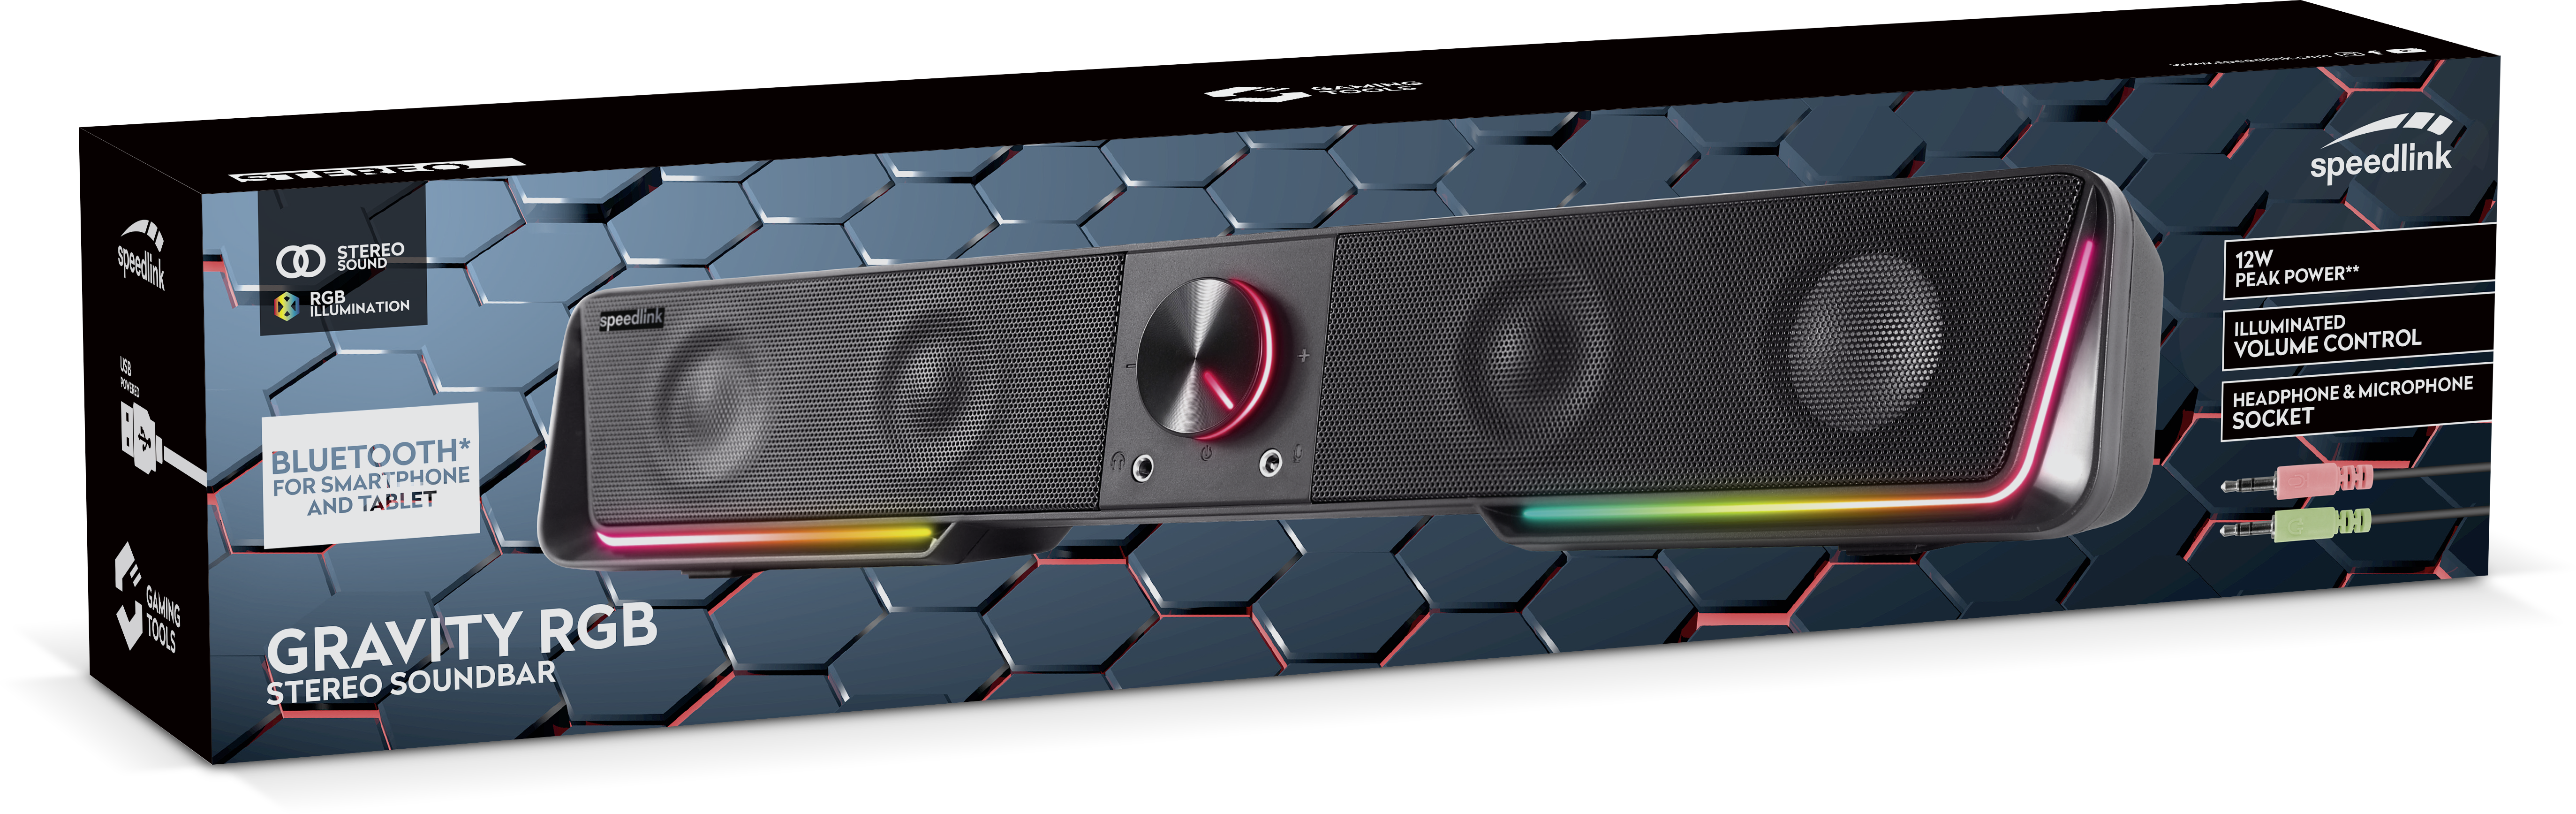 Speedlink - GRAVITY RGB Stereo Soundbar, black - Elektronikk